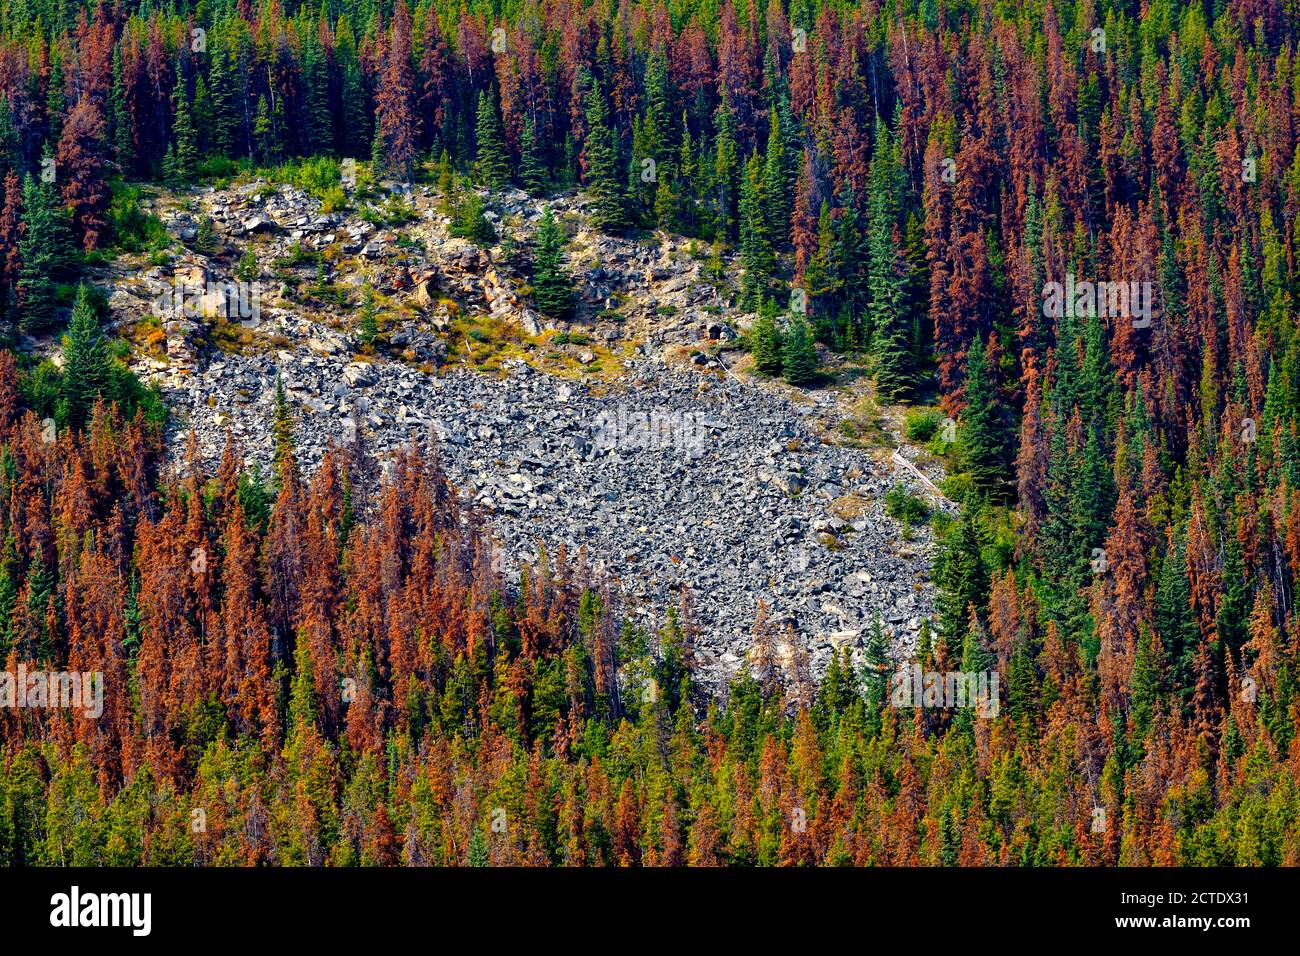 Arbres morts qui ont été tués par une infestation de dendroctones dans le parc national Jasper Alberta Canada avec un glissement d'érosion sur le sol rocheux. Banque D'Images